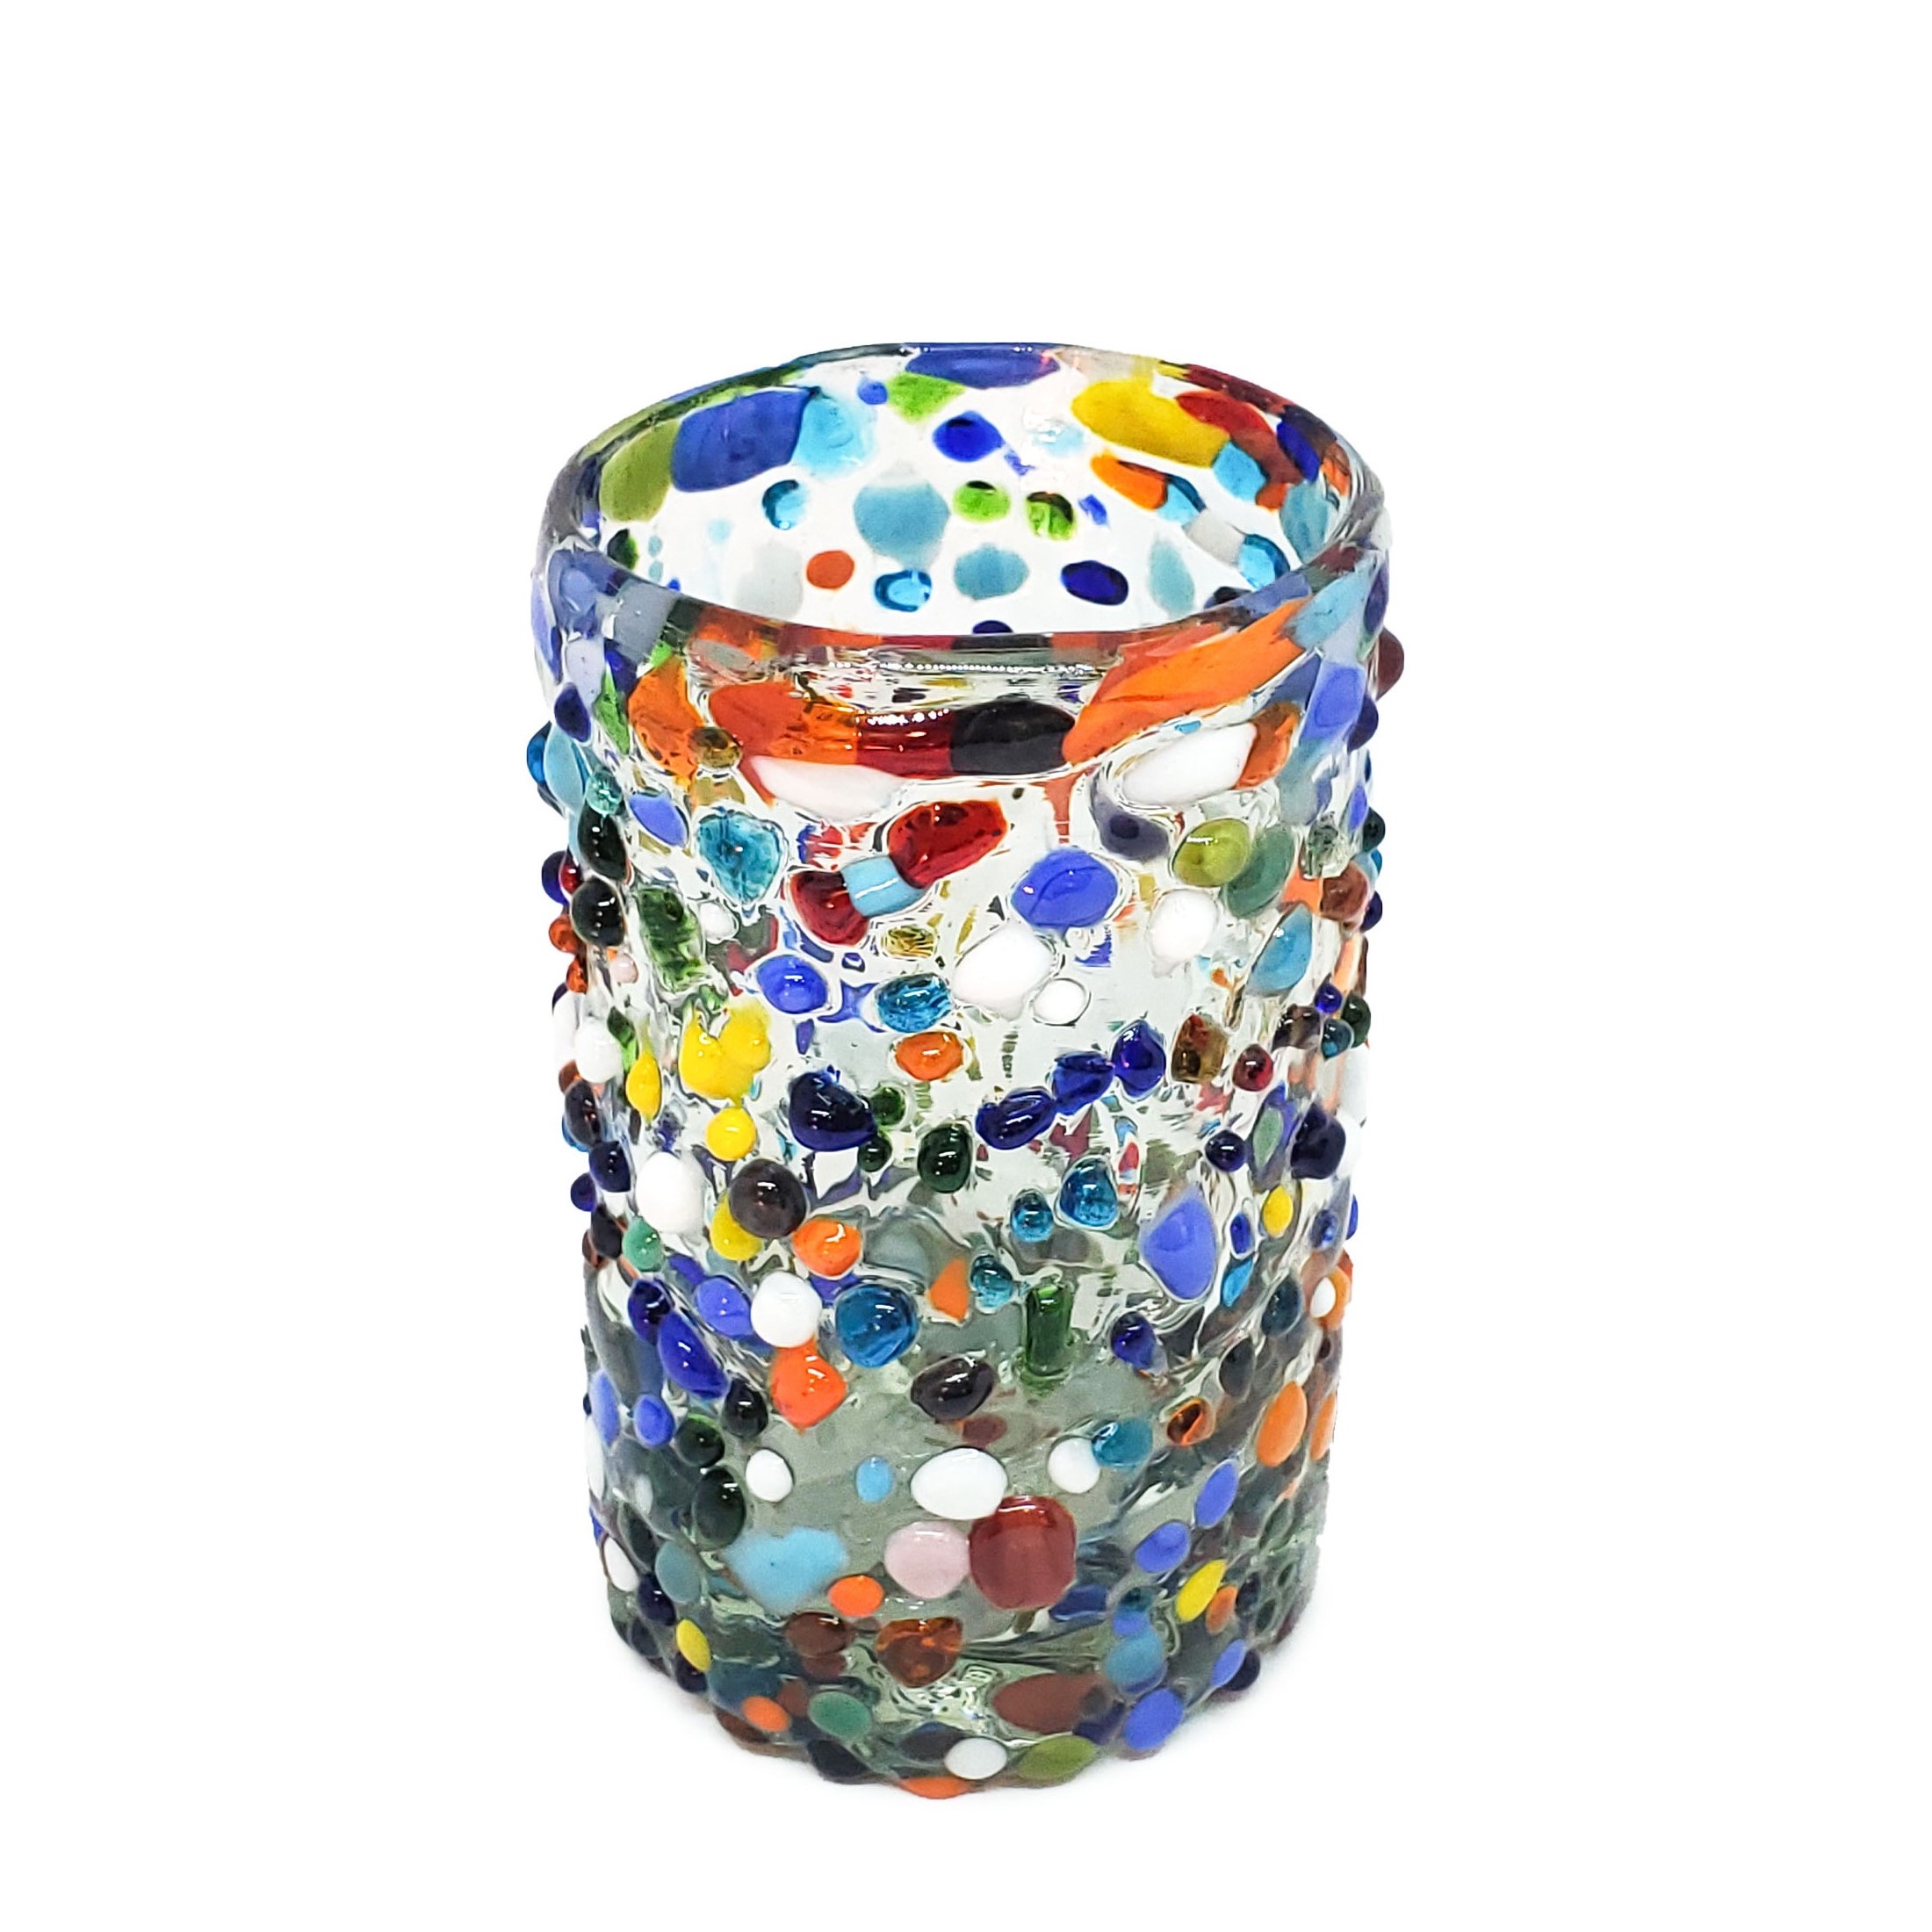 VIDRIO SOPLADO / Juego de 6 vasos Jugo 9oz Confeti granizado, 9 oz, Vidrio Reciclado, Libre de Plomo y Toxinas